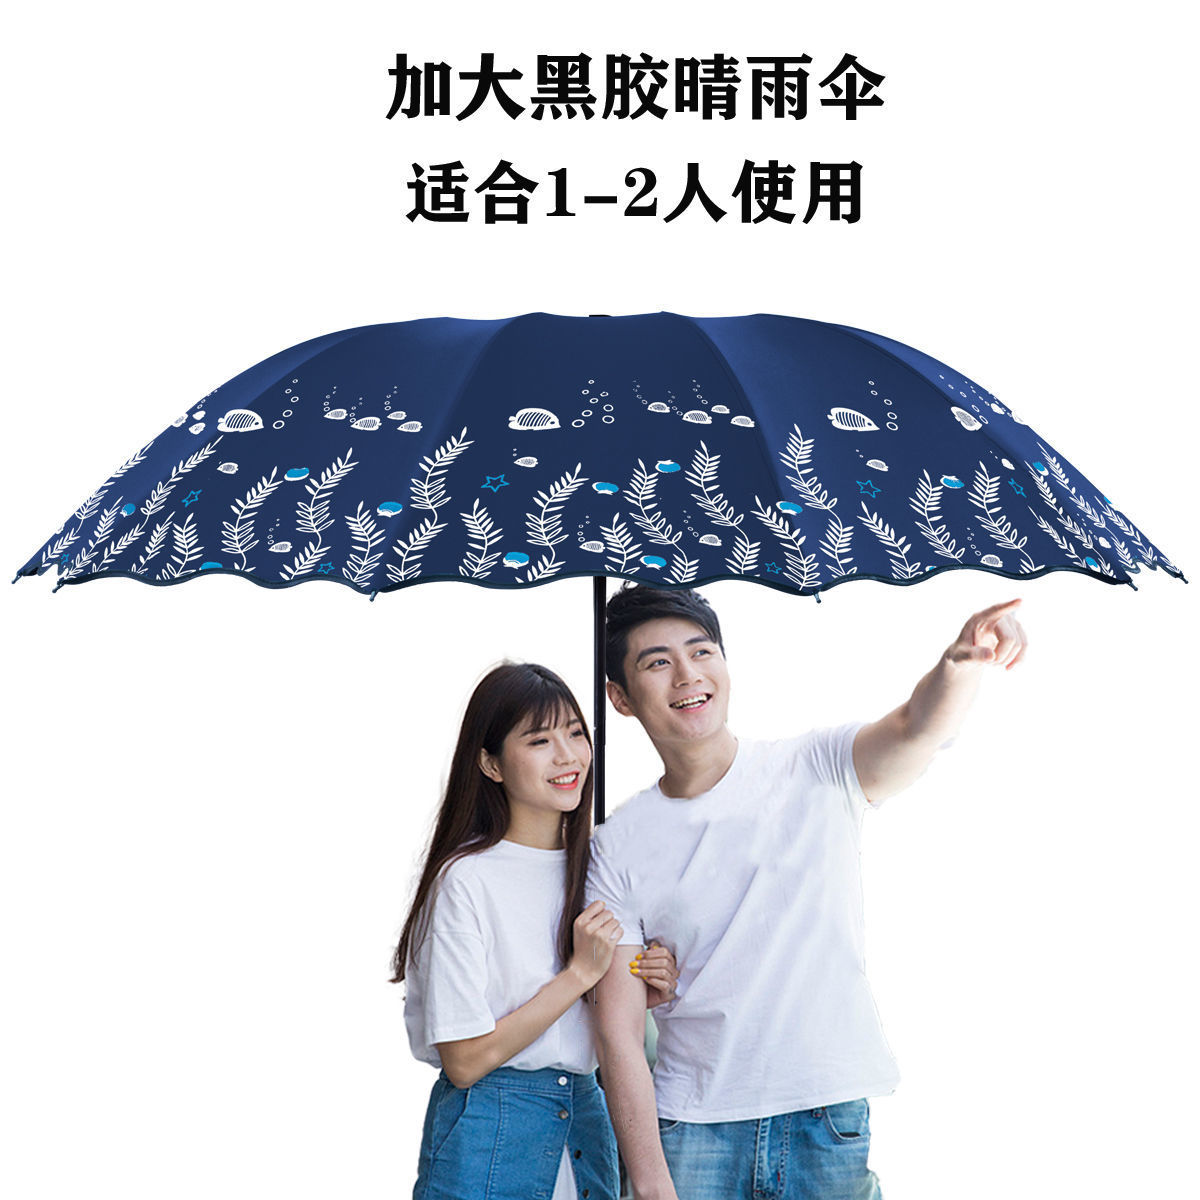 雨伞大号双人晴雨两用太阳伞女学生折叠黑胶防晒遮阳伞